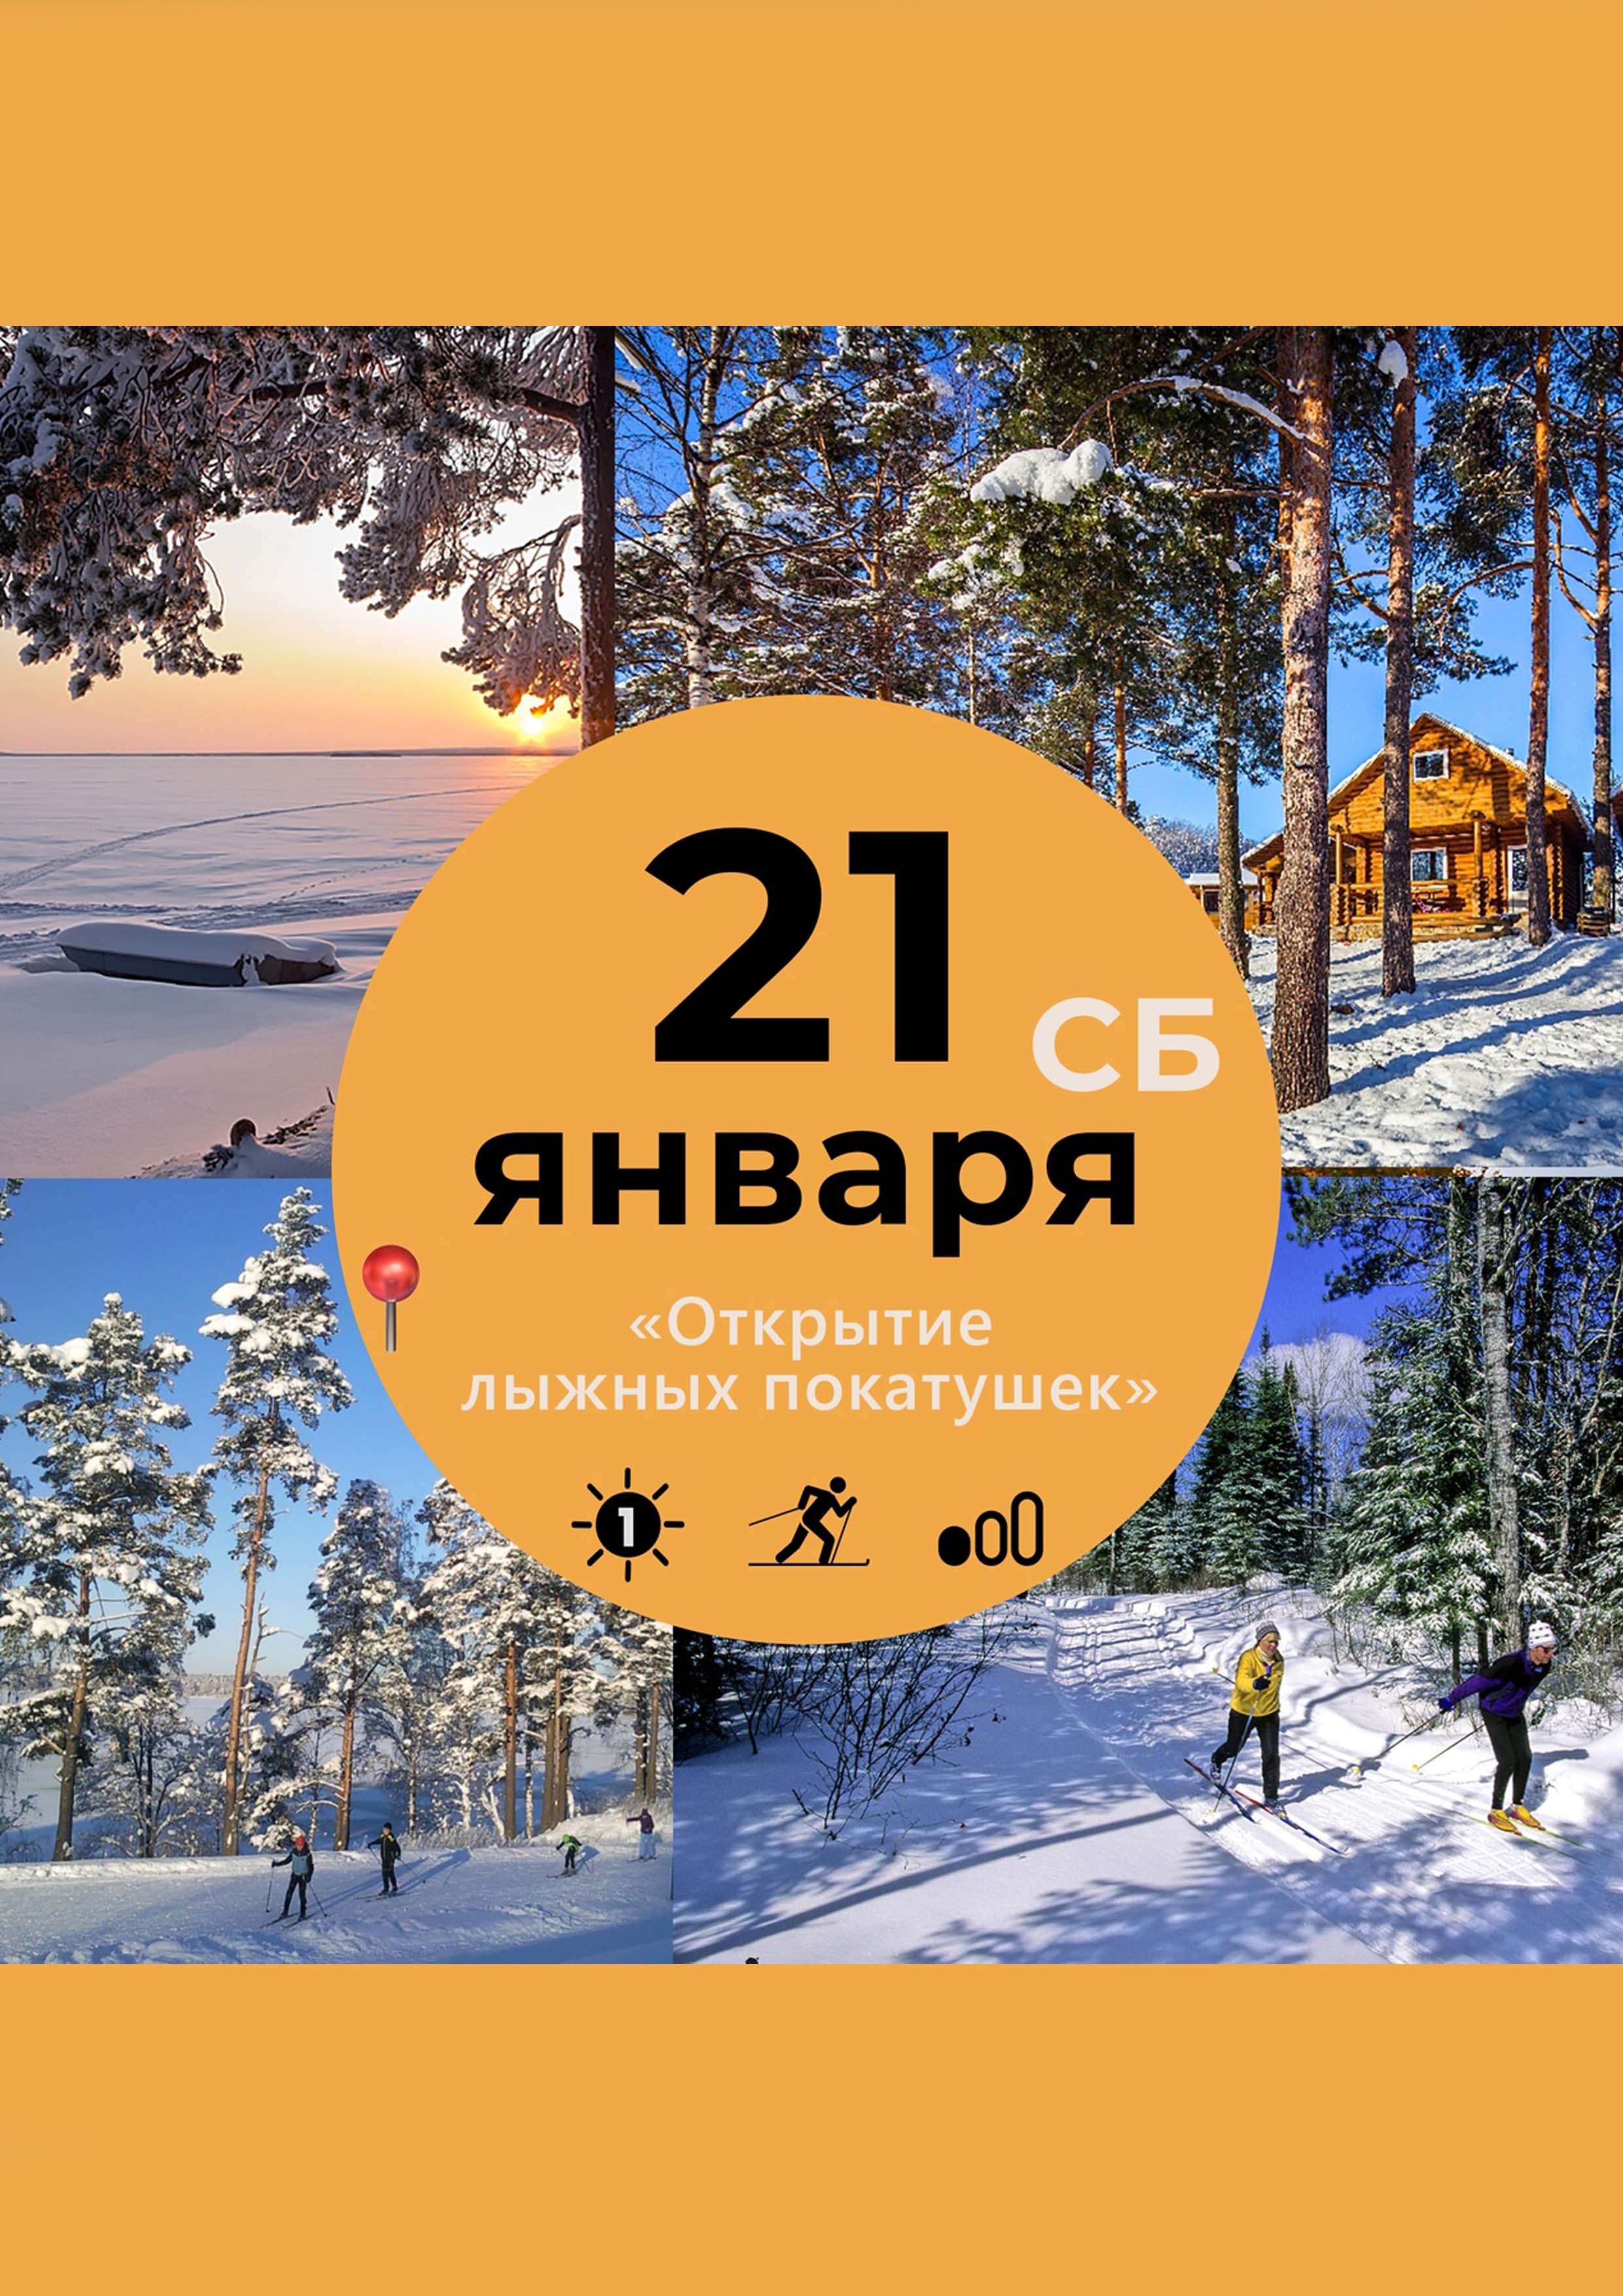 Открываем лыжный сезон в ЛО! 21  Tháng giêng
 2023  năm
